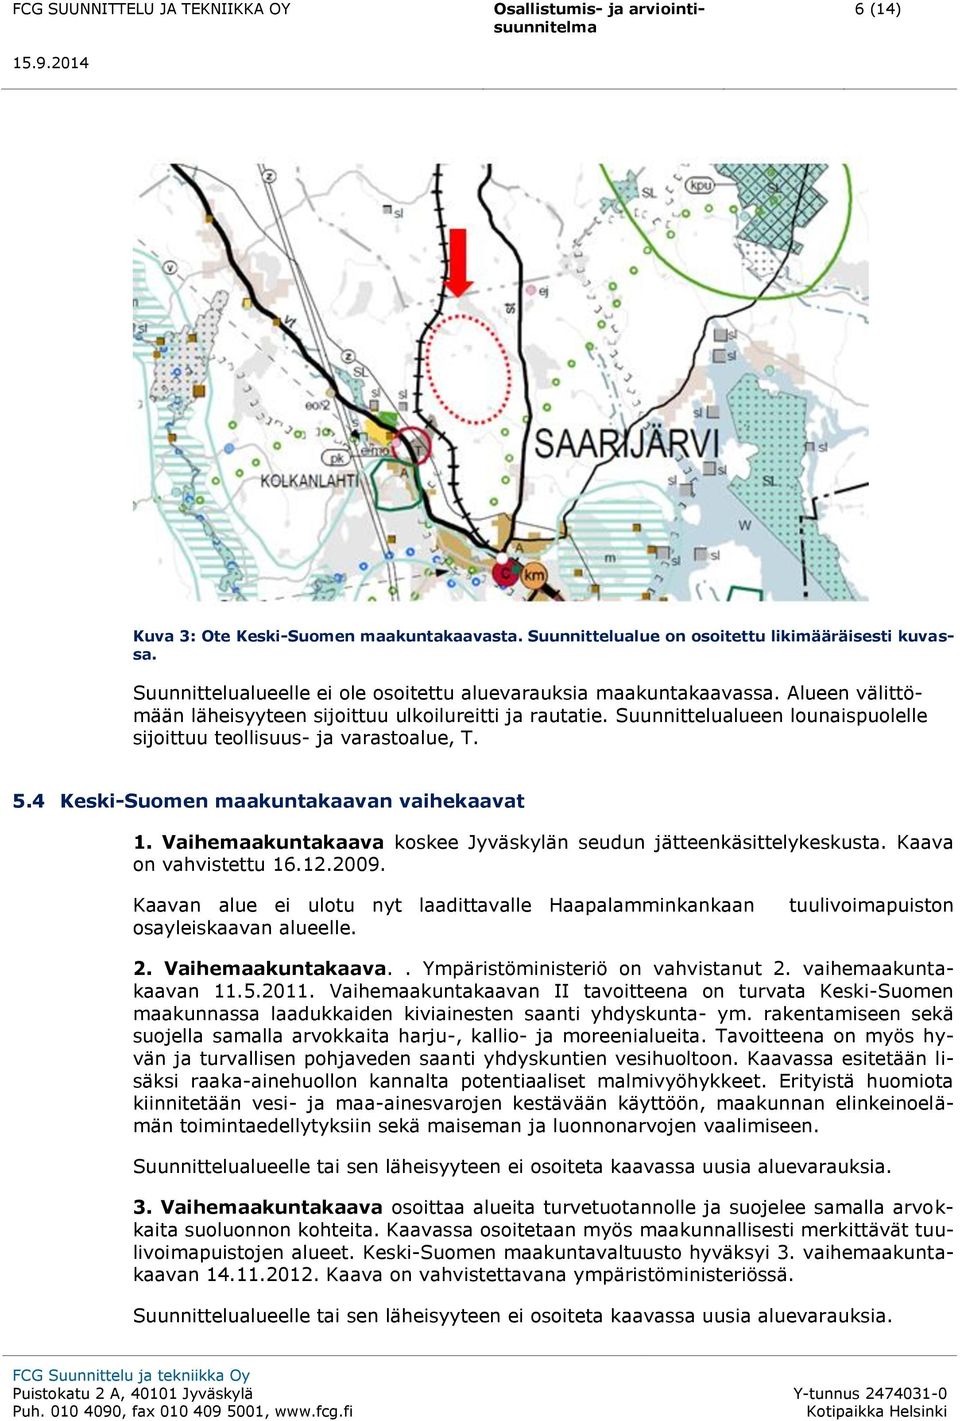 Vaihemaakuntakaava koskee Jyväskylän seudun jätteenkäsittelykeskusta. Kaava on vahvistettu 16.12.2009. Kaavan alue ei ulotu nyt laadittavalle Haapalamminkankaan osayleiskaavan alueelle.